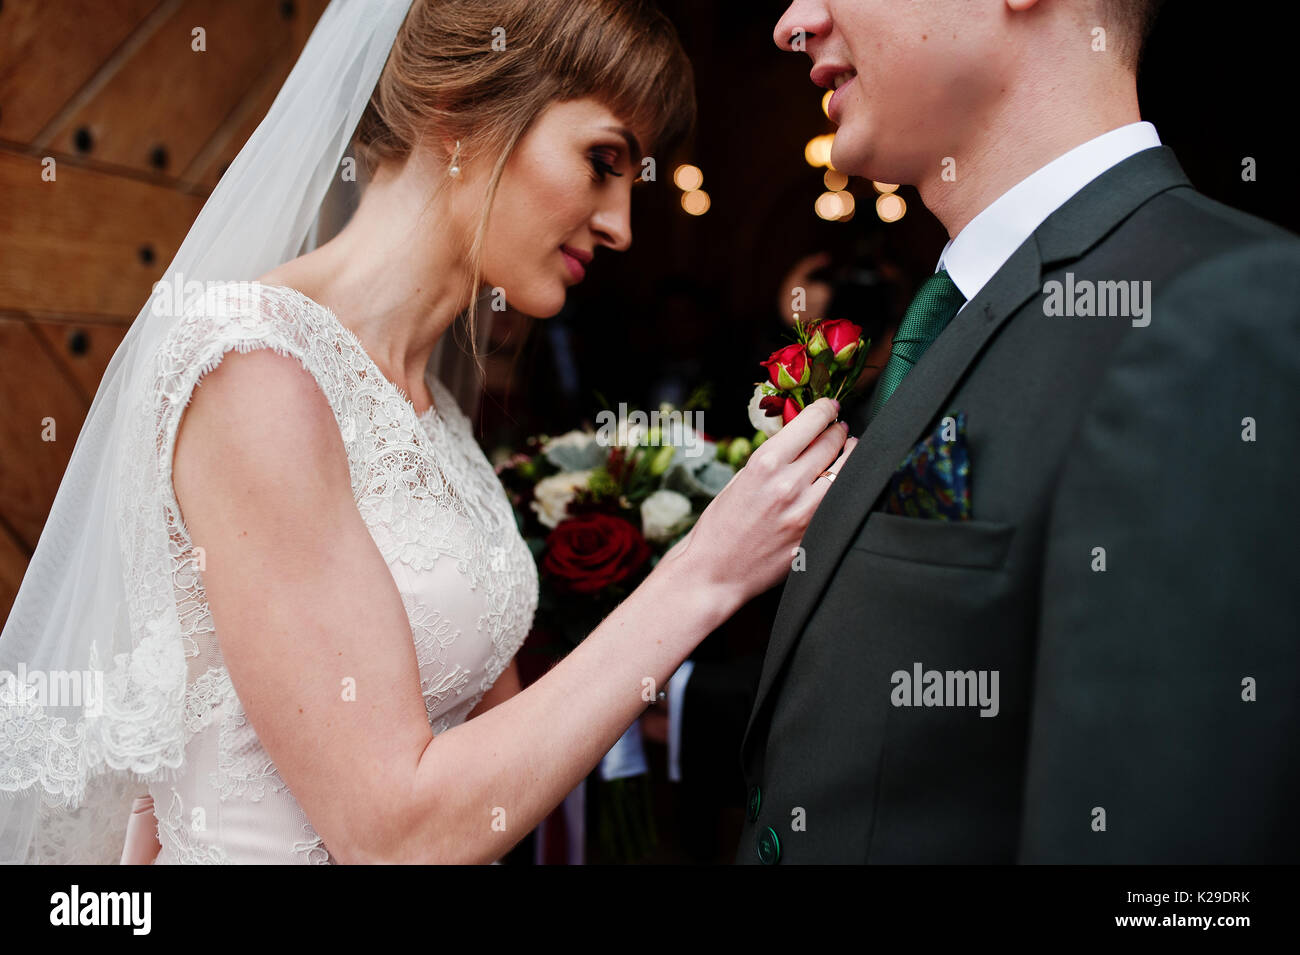 Schöne Braut pinning ein knopfloch Blume bis zu einem Bräutigam Jacke. Stockfoto